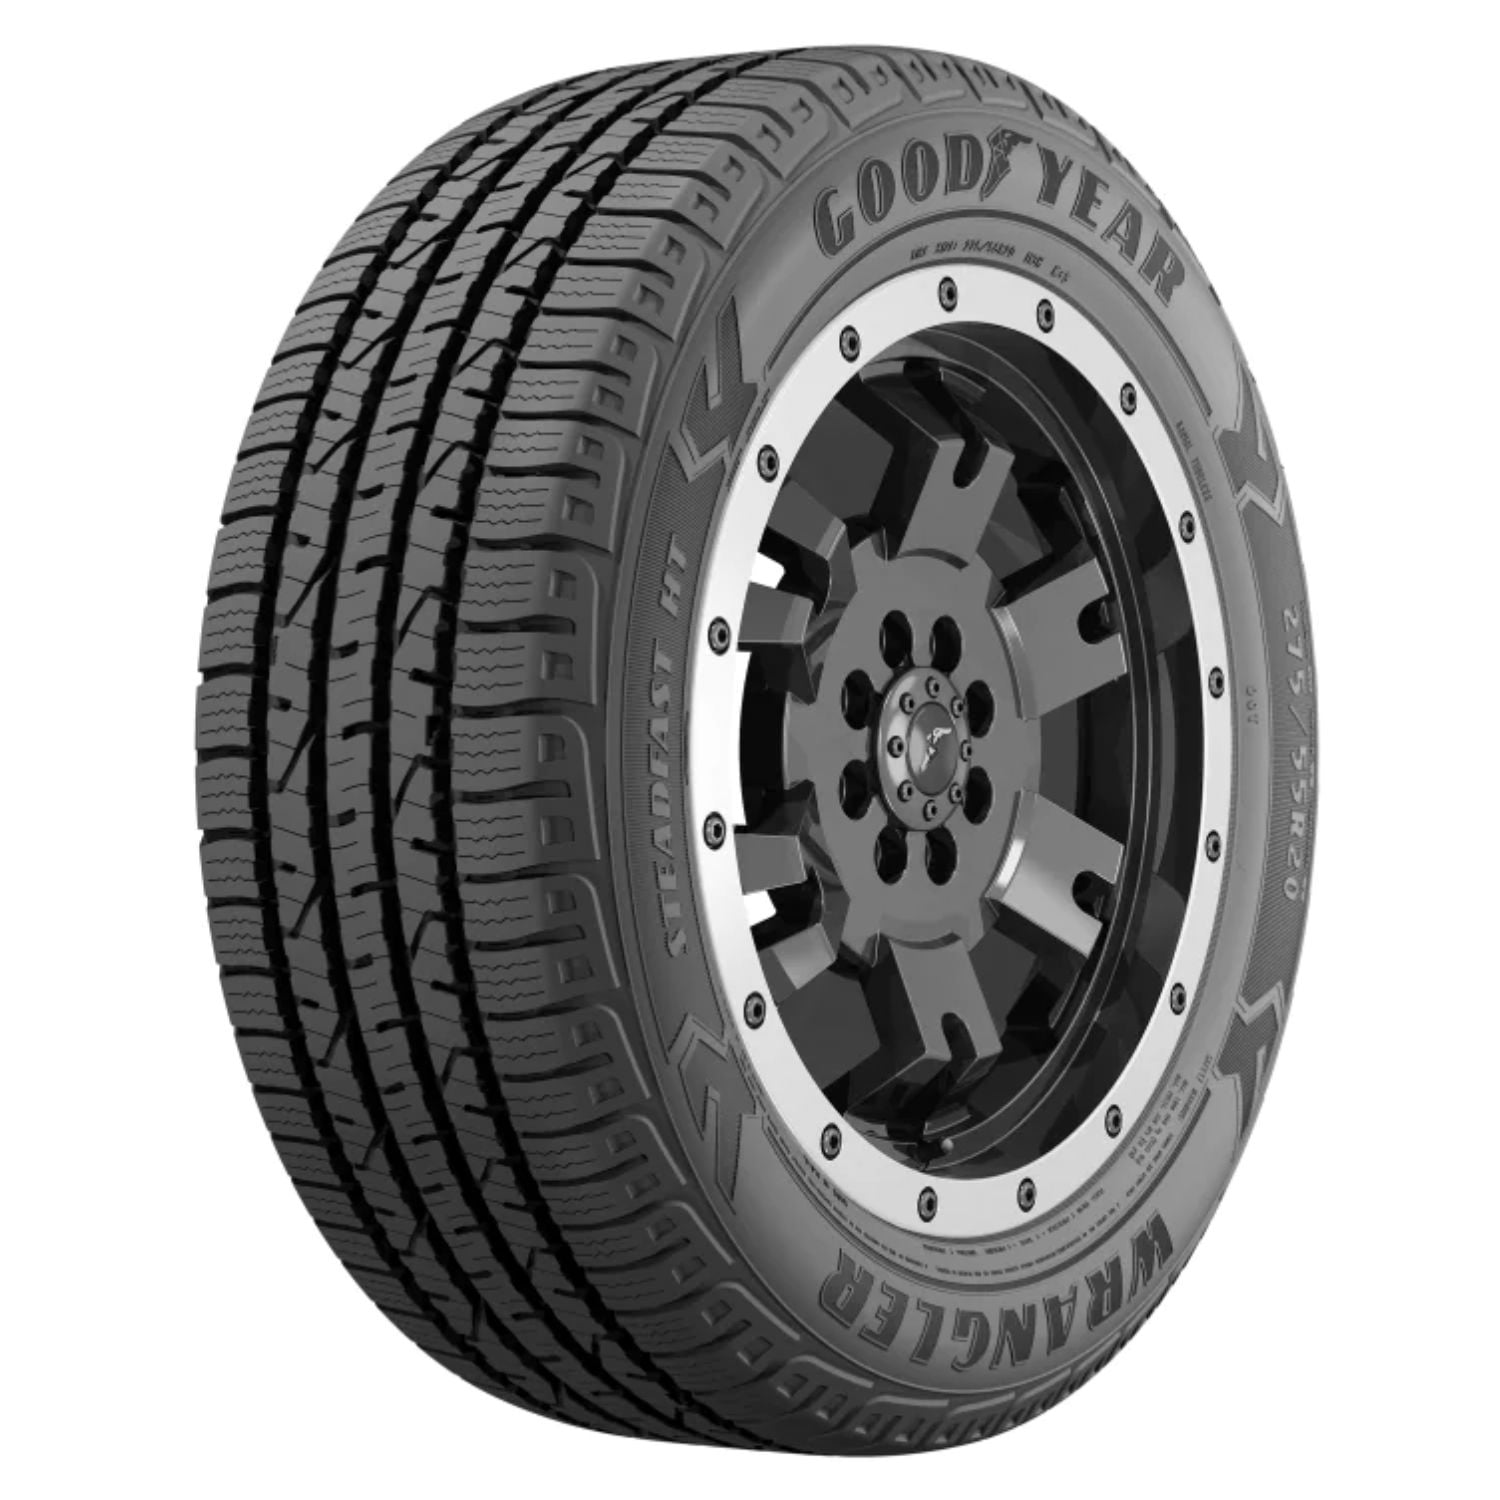 Goodyear Wrangler Steadfast HT All Season 255/50R20 109H XL Light Truck  Tire 